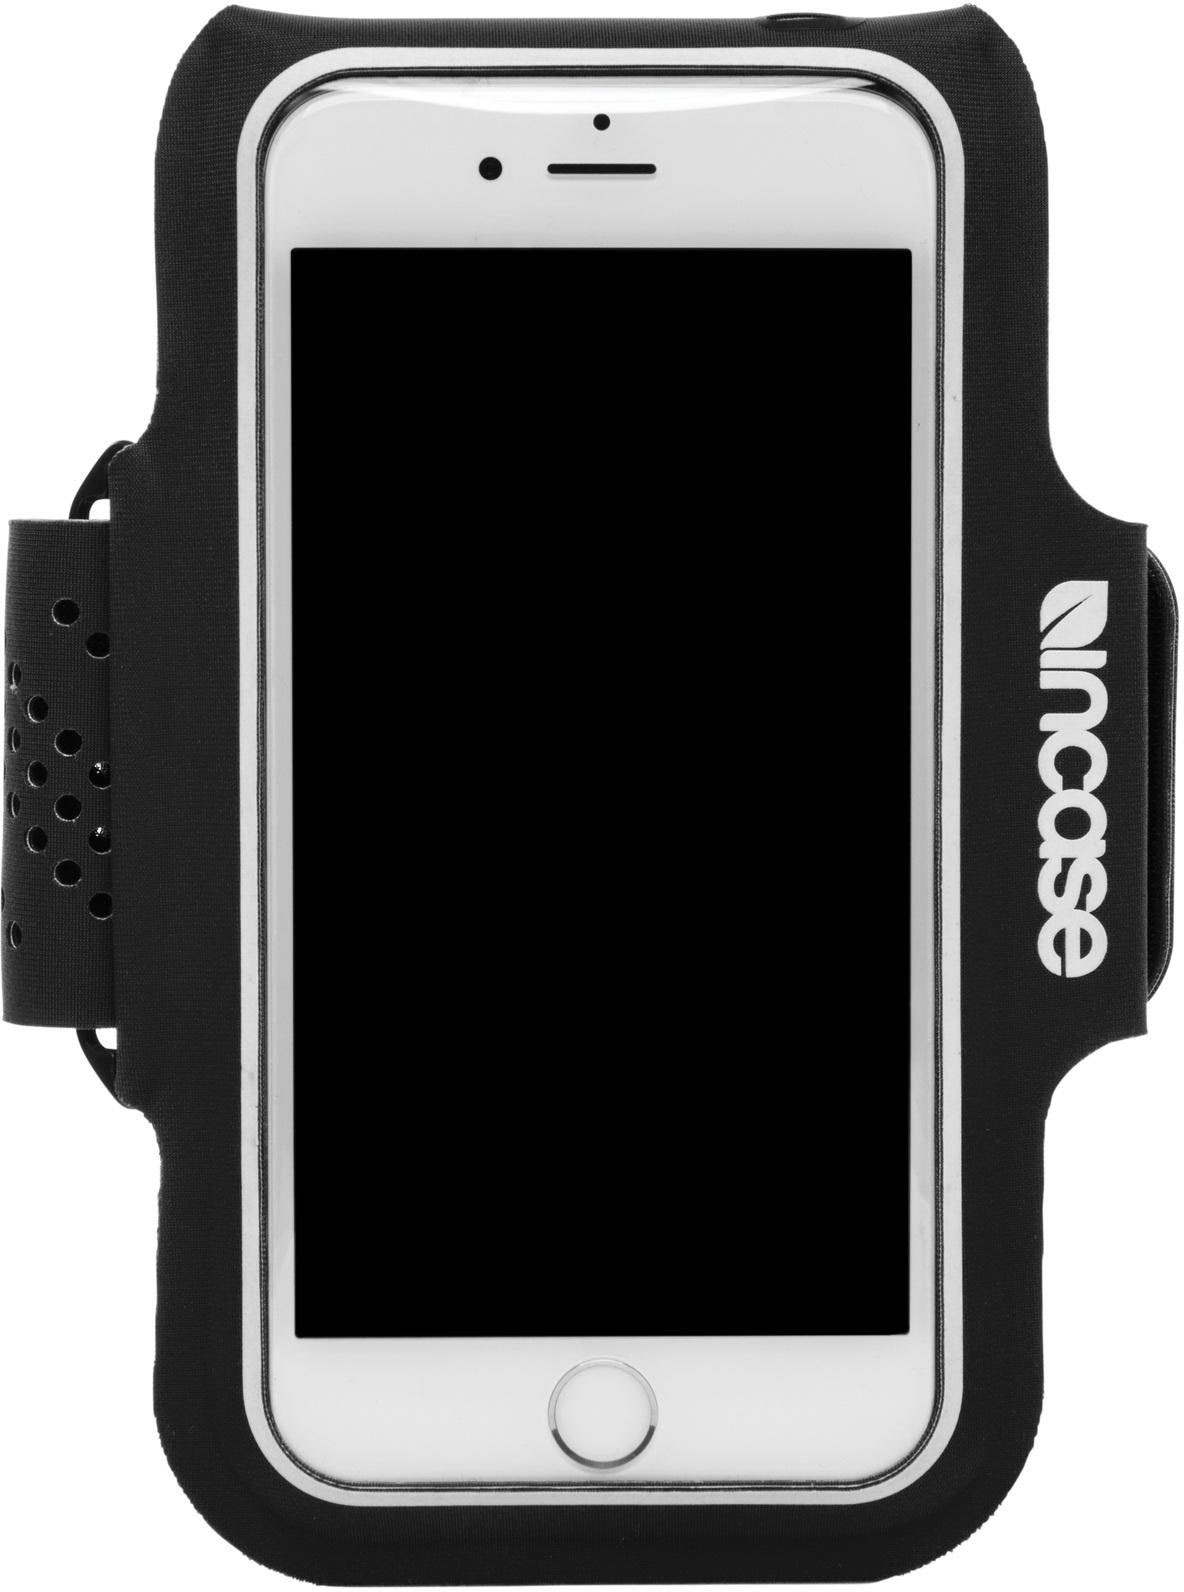 фото Спортивный чехол на руку Incase Active Armband для iPhone 6/6s/7/8. Материал нейлон. Цвет черный.